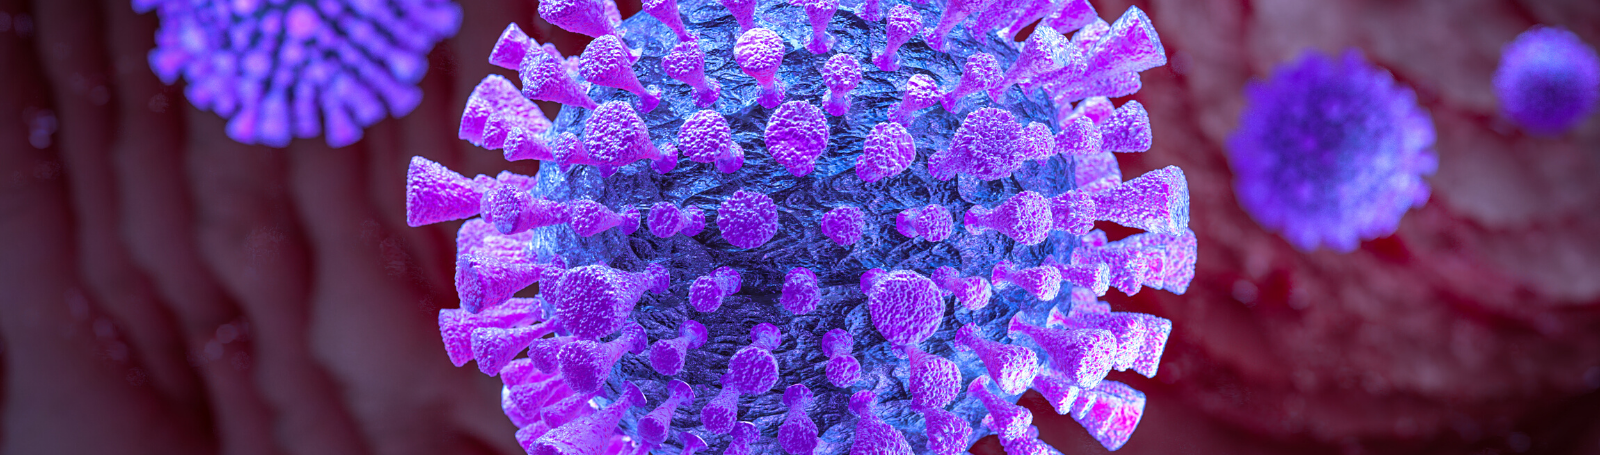 coronavirus, close-up of virus